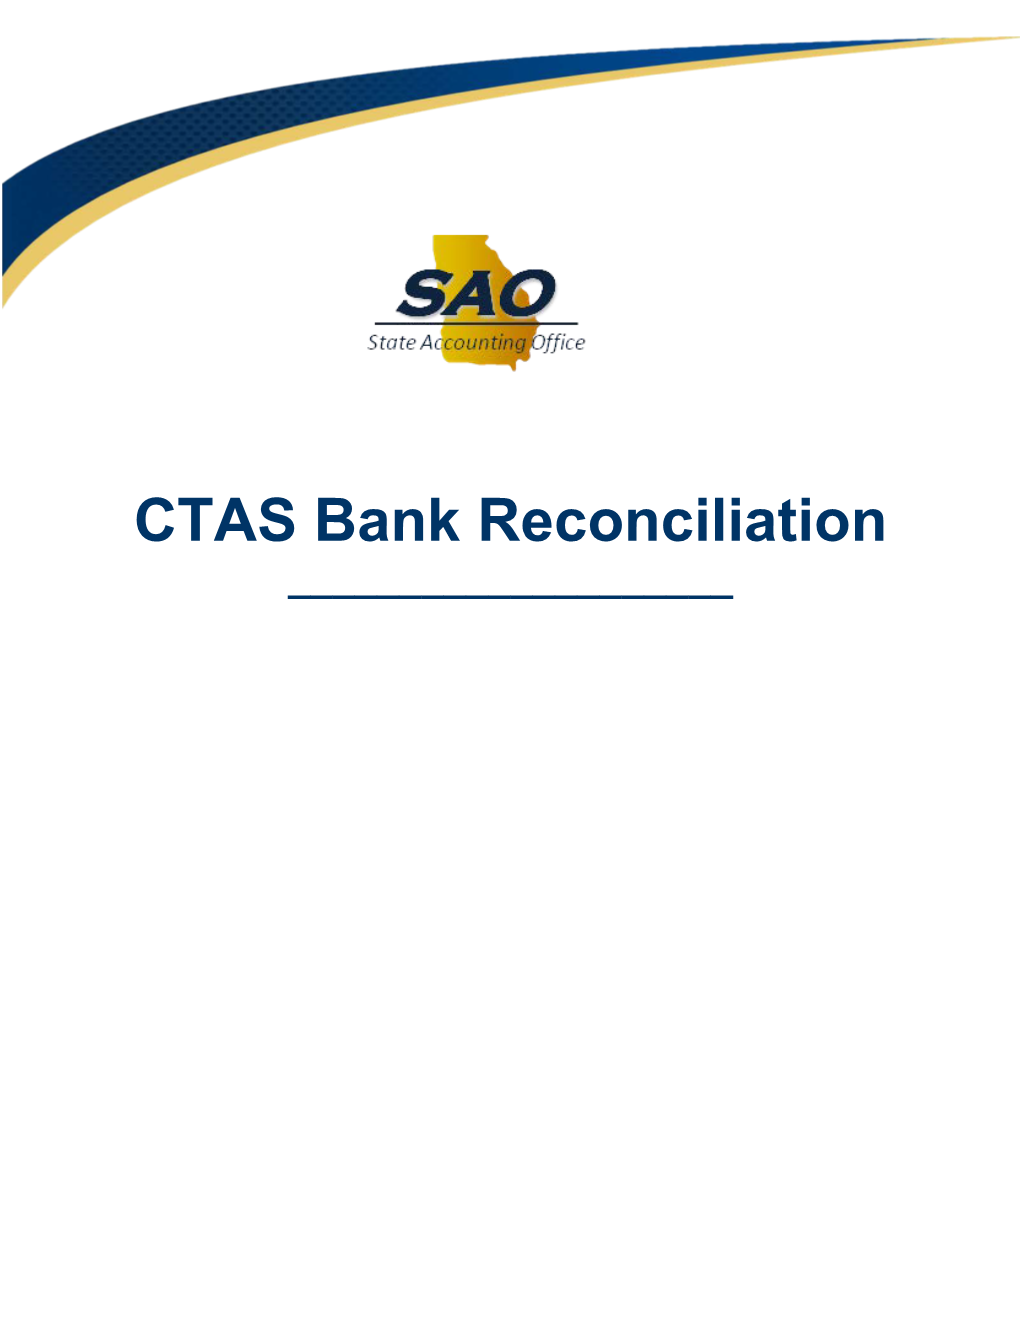 CTAS Bank Reconciliation Handbook 2017